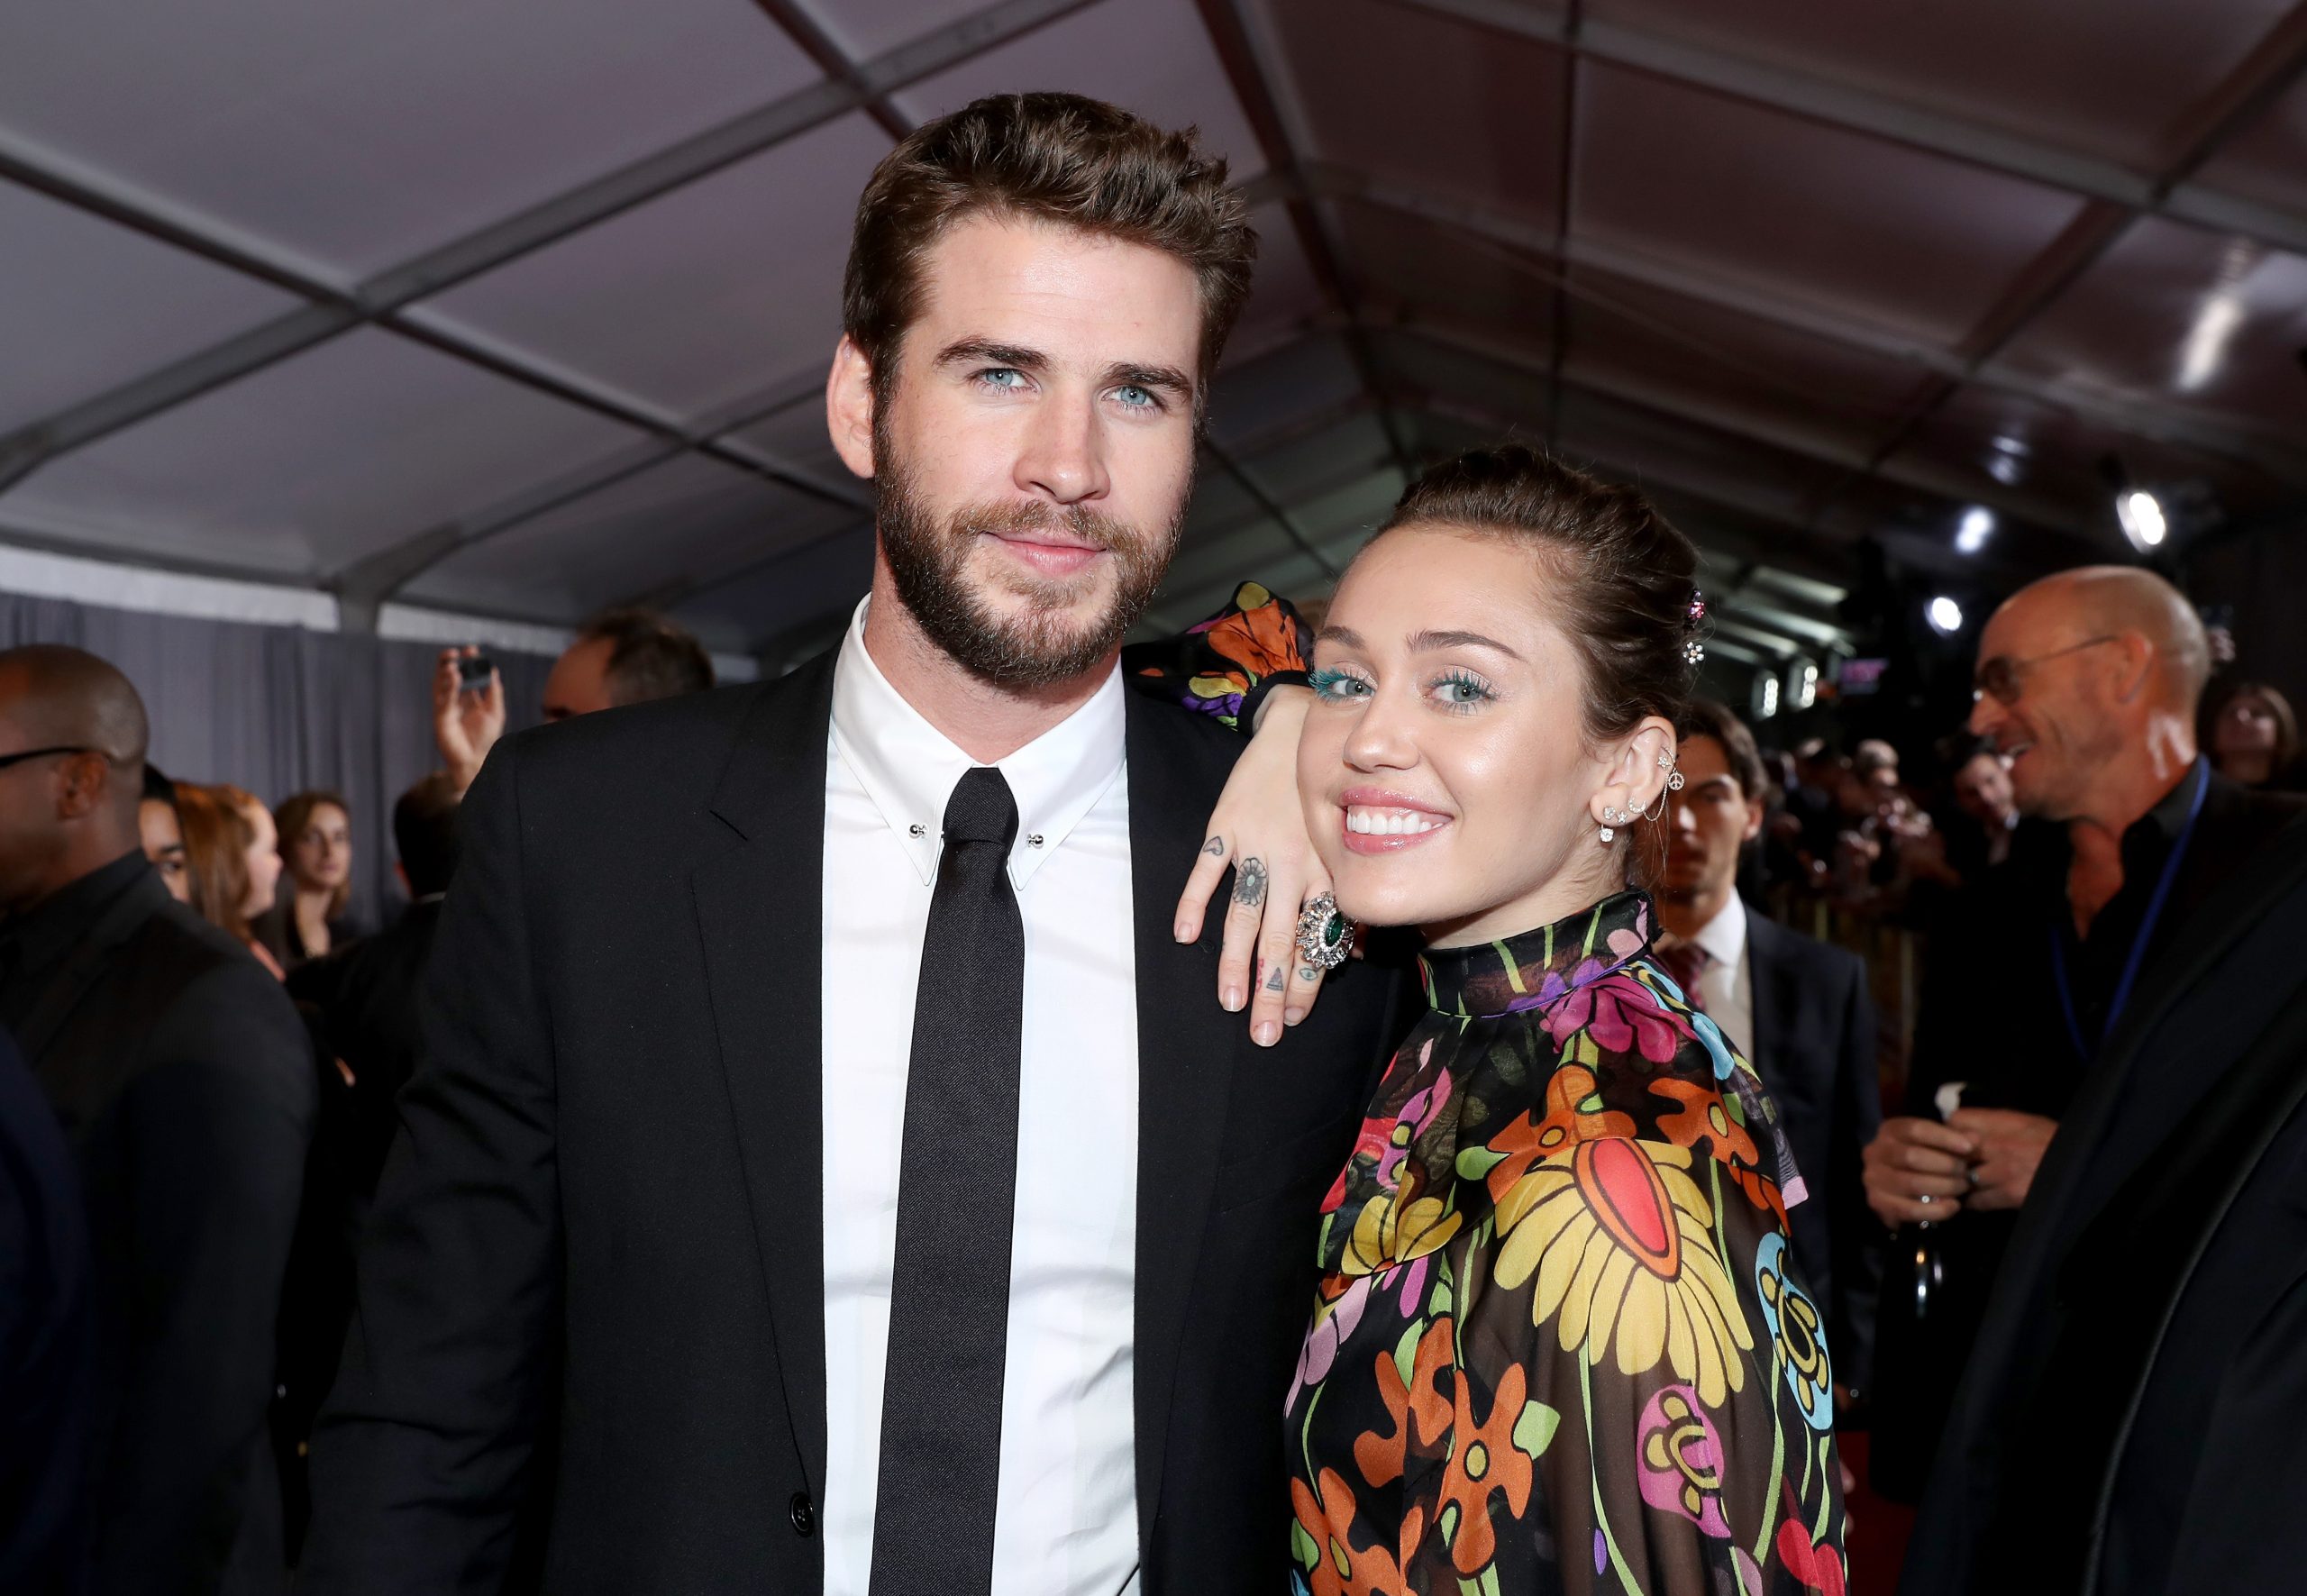 Chismecito del bueno: El hilo que explicó la intensa relación de Miley Cyrus y Liam Hemsworth